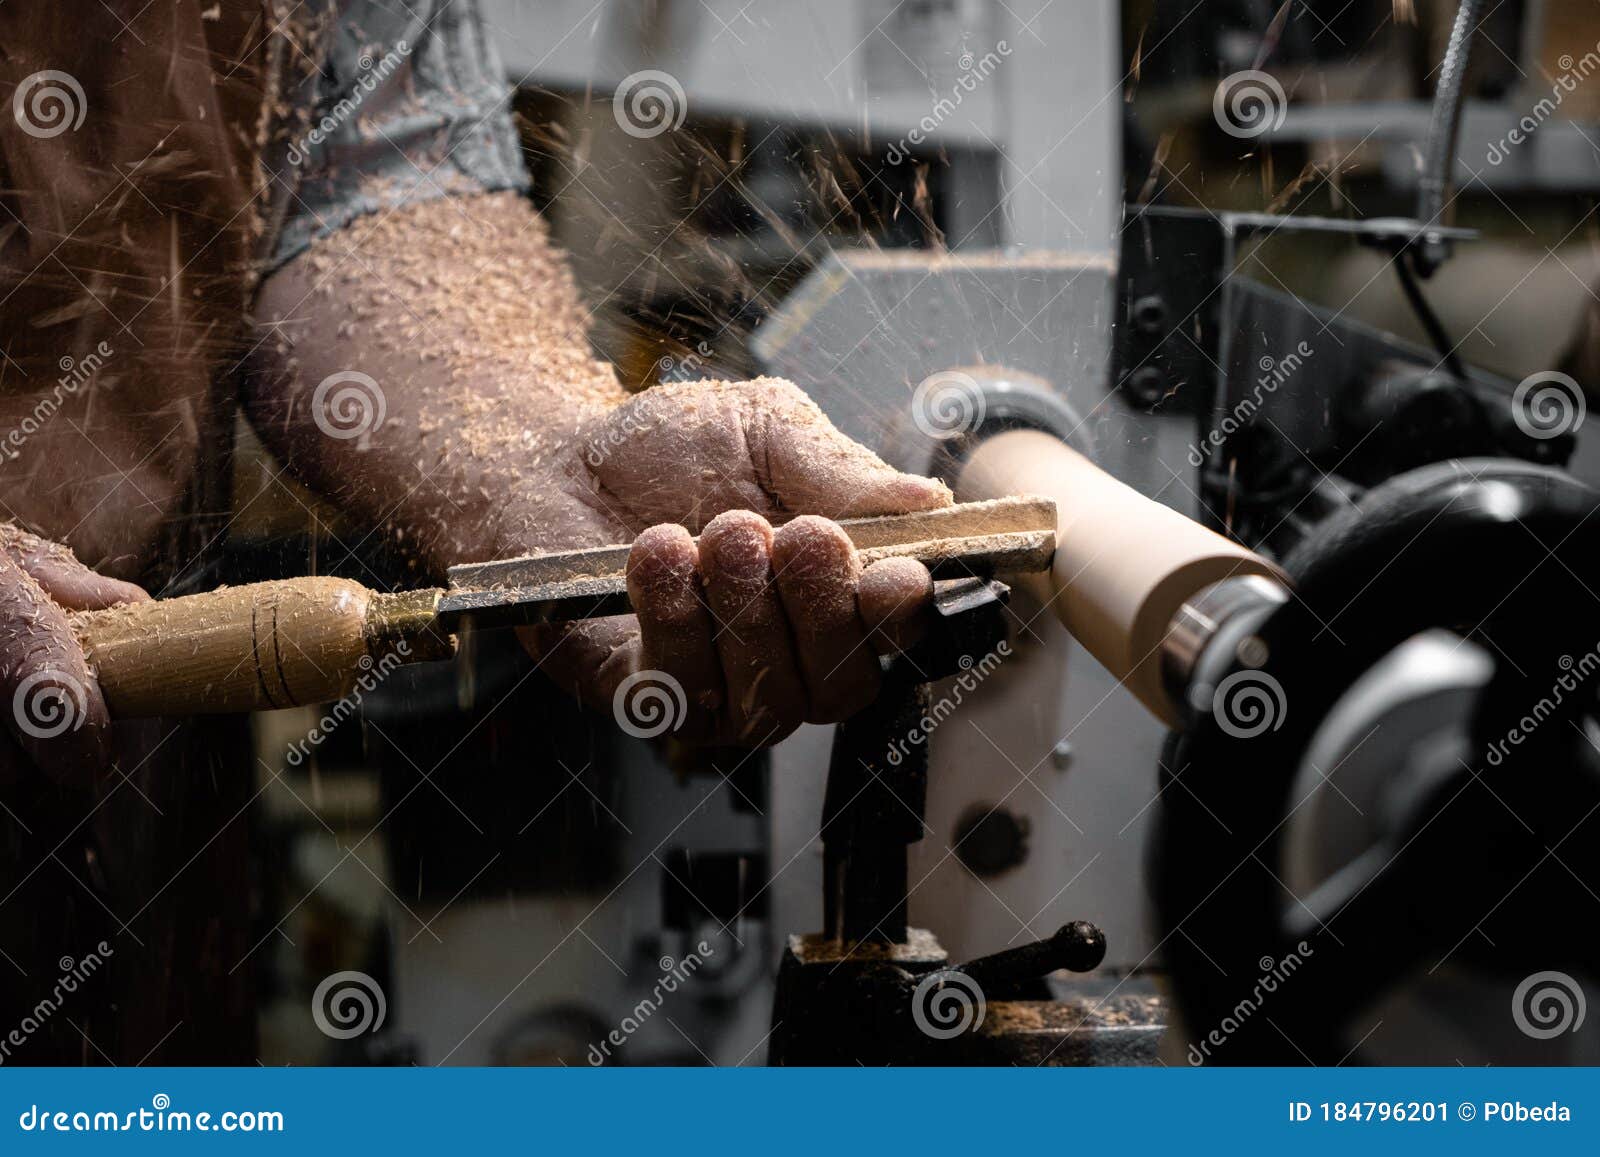 Un Uomo in Grembiule Da Lavoro Lavora Su Un Tornio Di Legno. Immagine Stock  - Immagine di umano, scalpello: 184796201